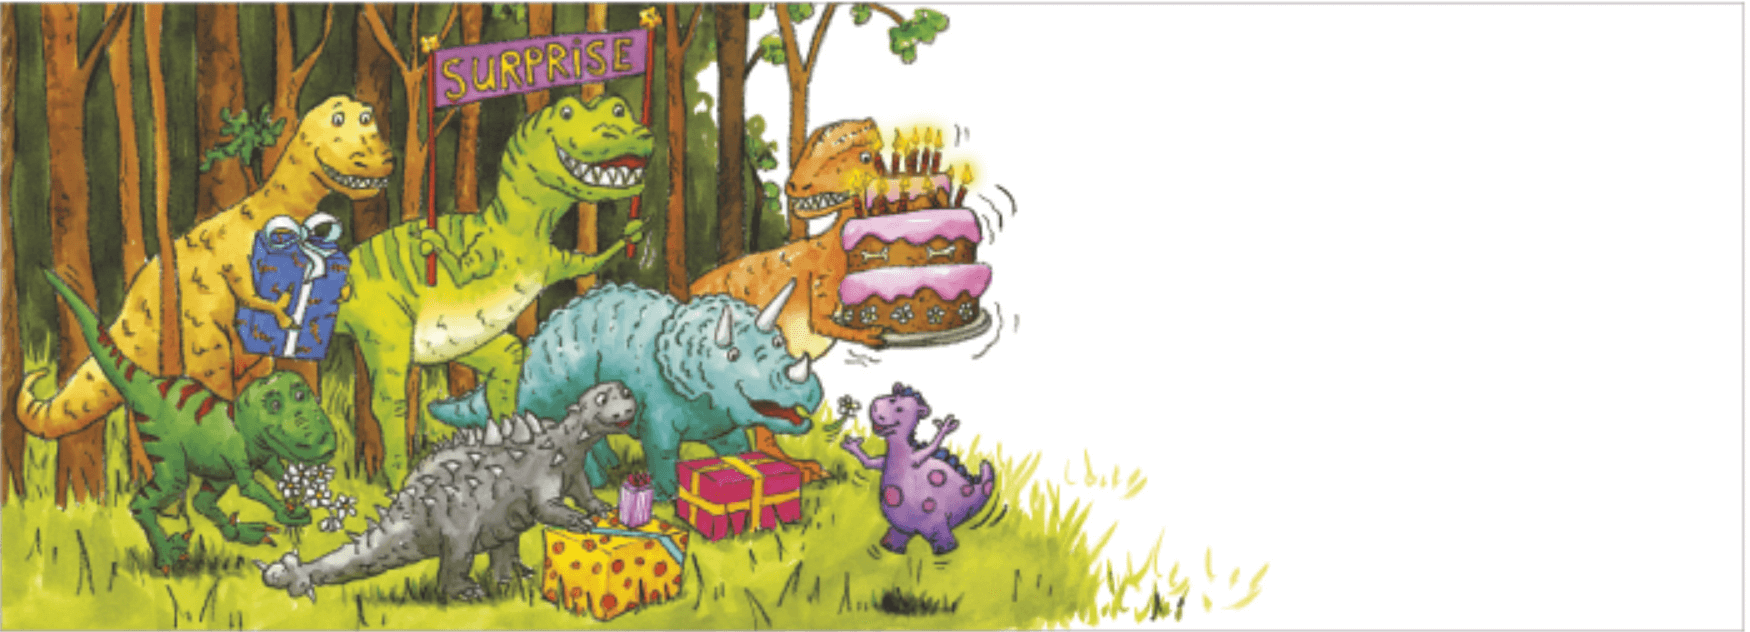 Överraskningskort utan kuvert - Dinosaurie-överraskning (Fraktfritt)